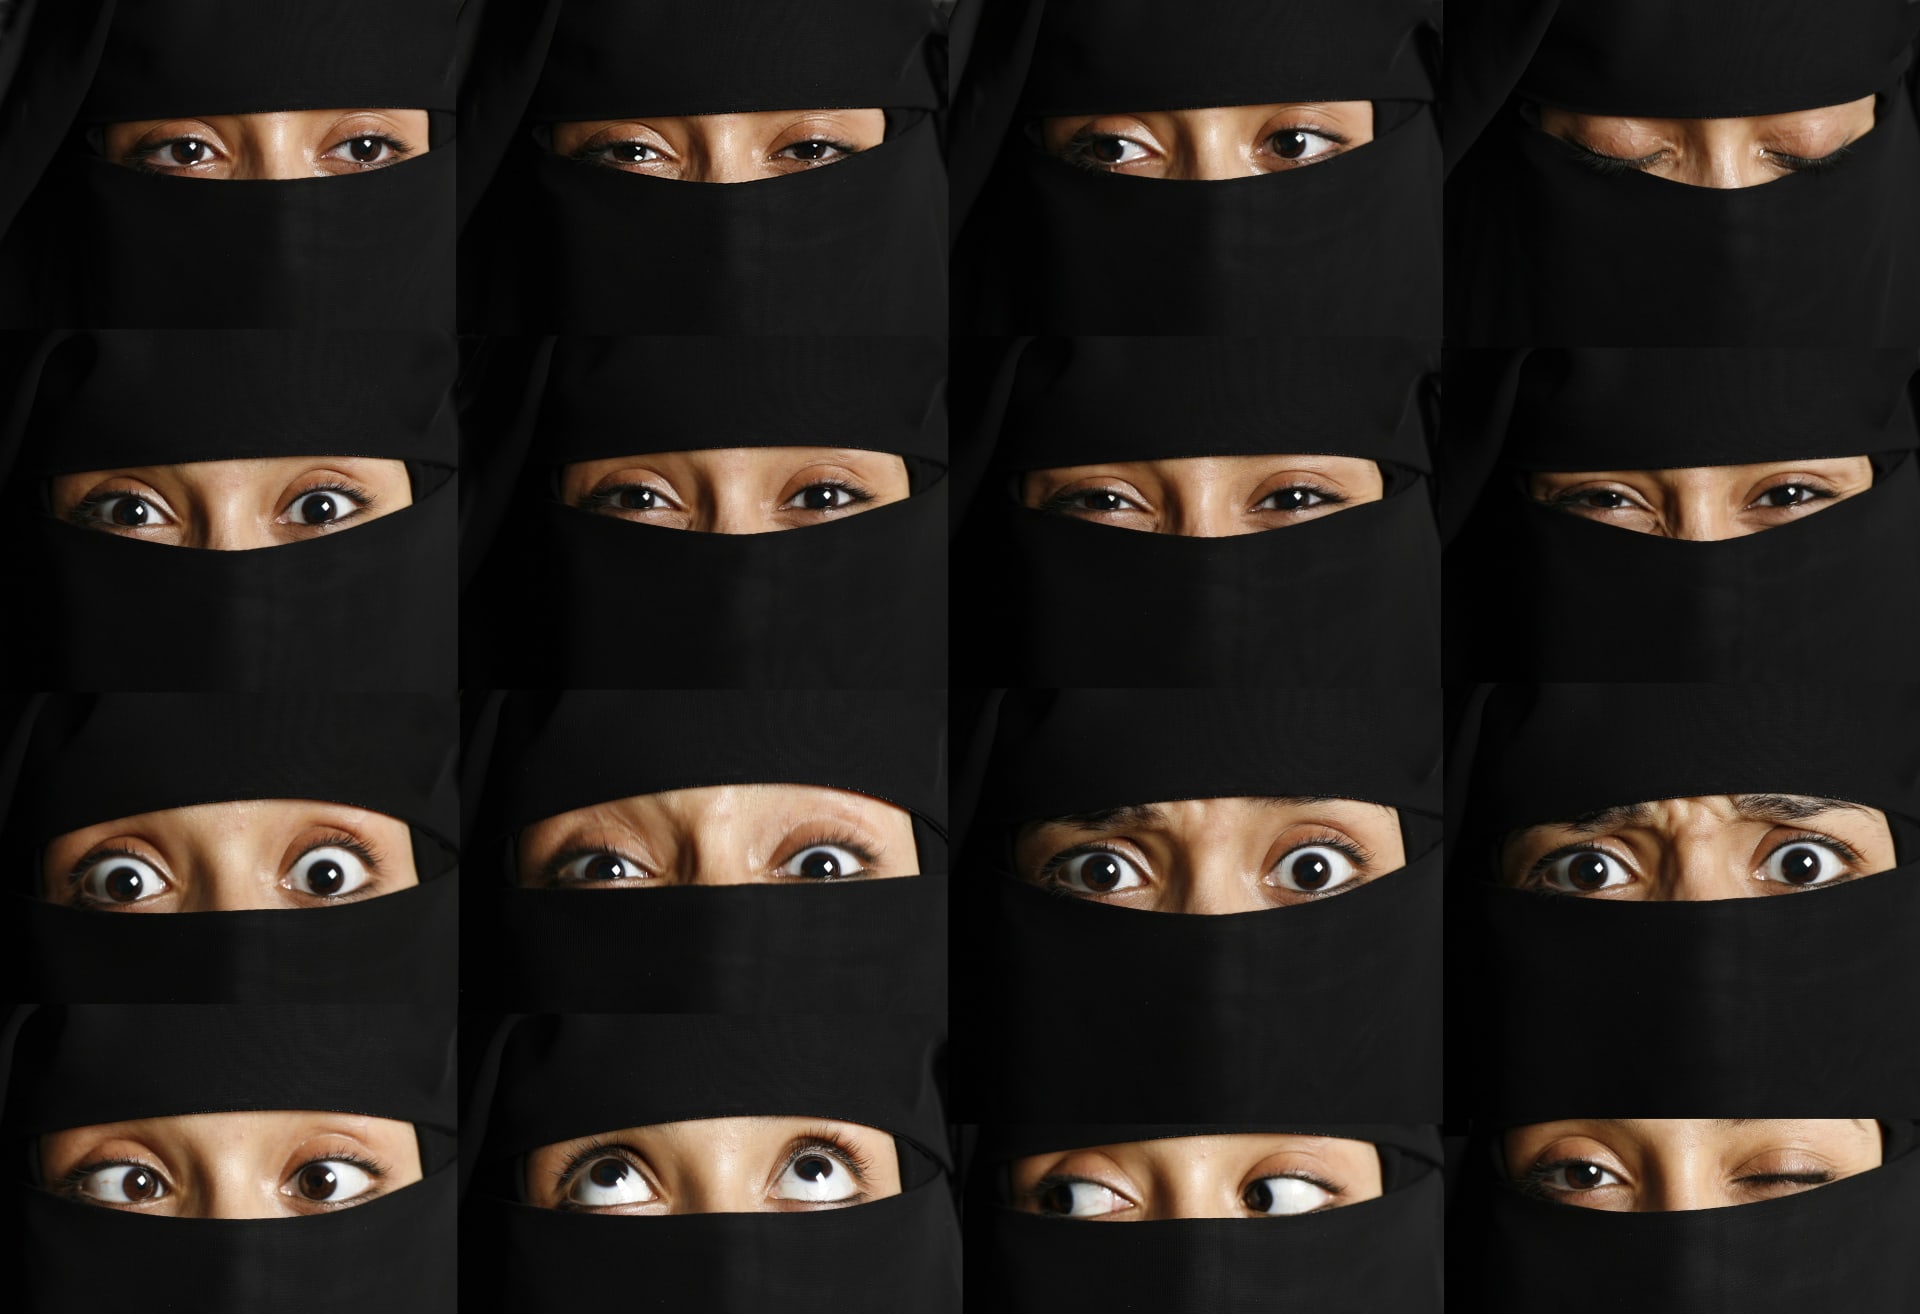 كيف تستكشف أول مصورة يمنية قضايا المرأة؟